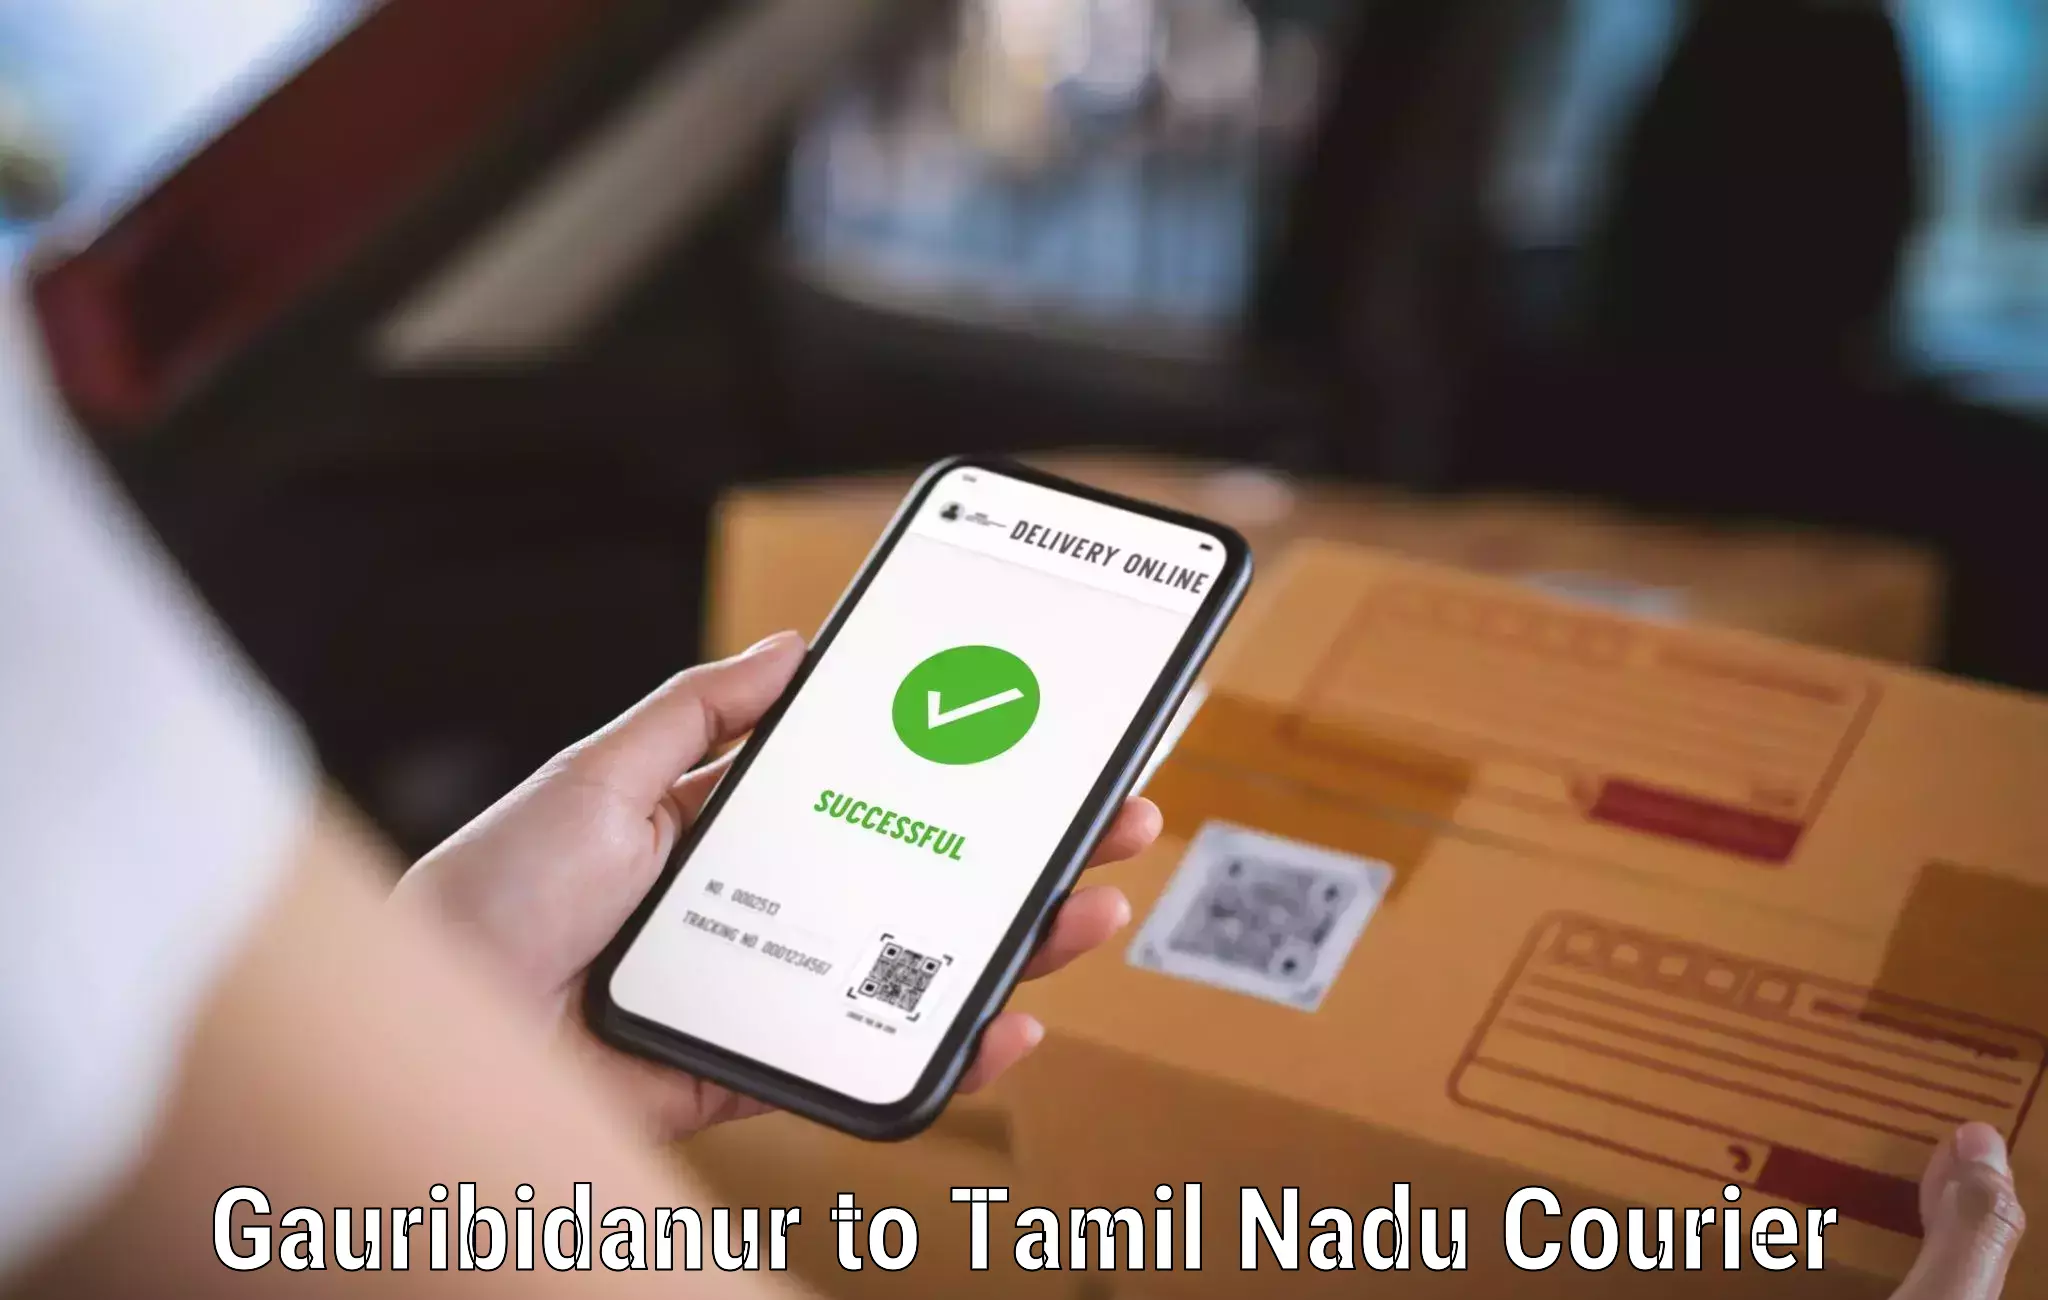 Speedy delivery service Gauribidanur to IIIT Tiruchirappalli